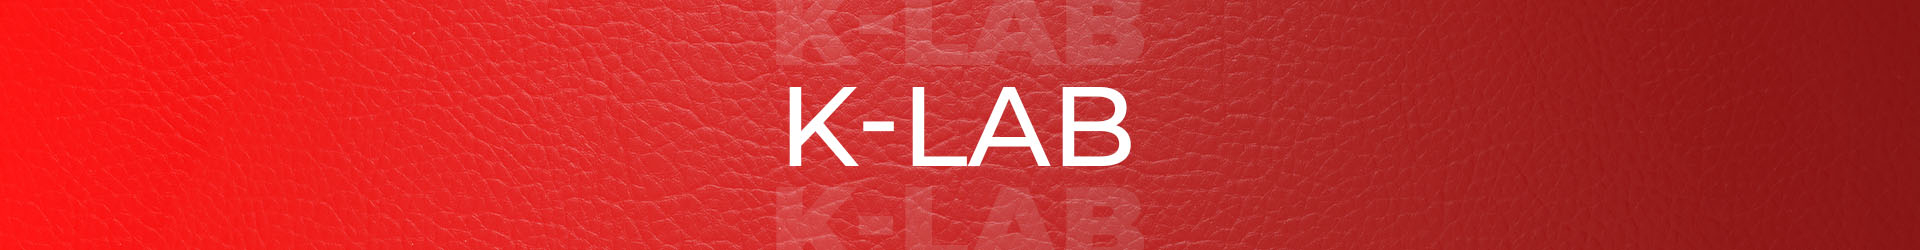 K-lab